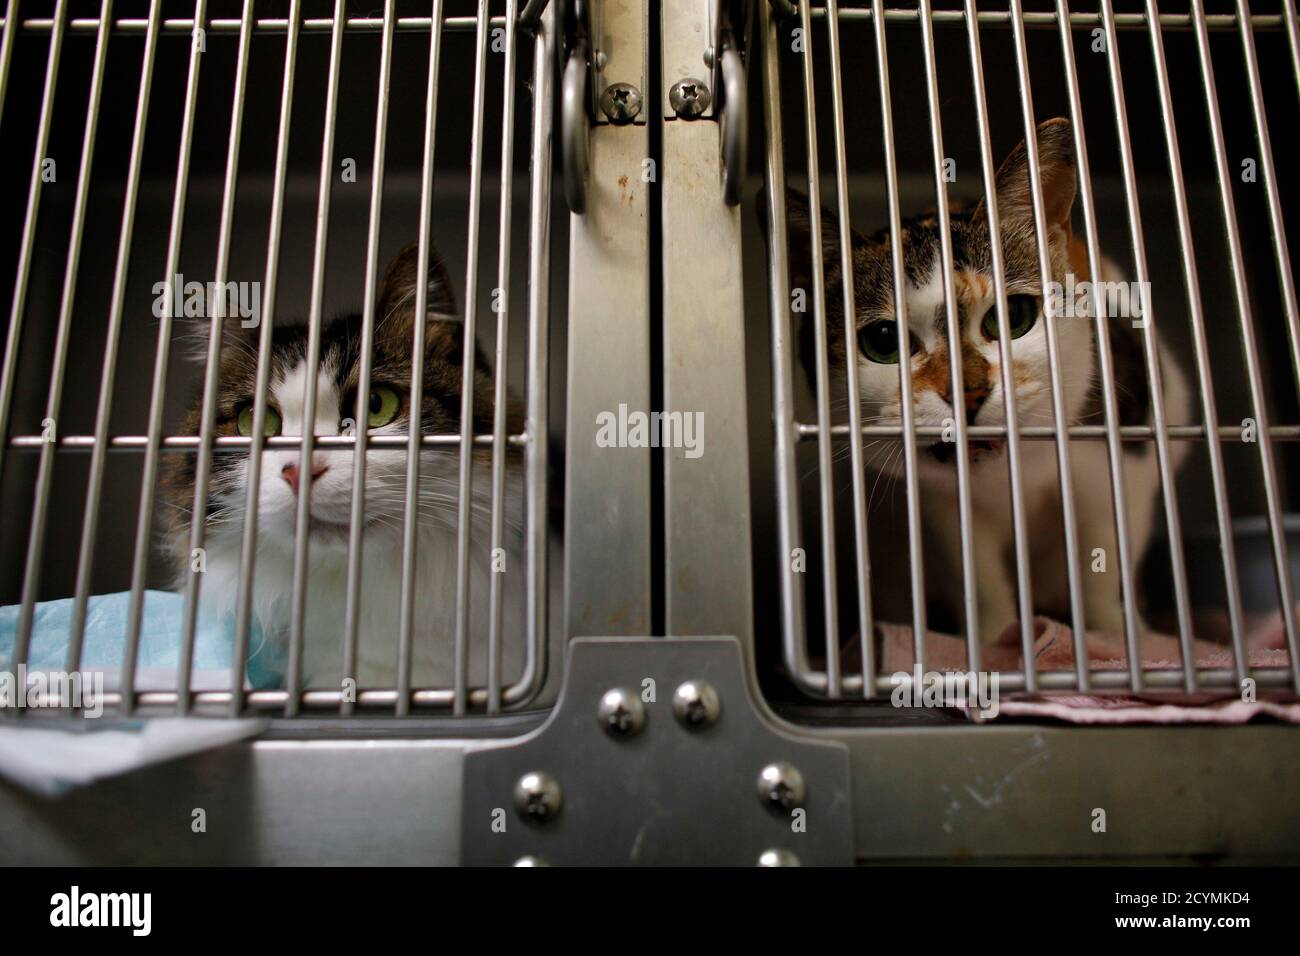 Los gatos rescatados del terremoto y tsunami del 11 de marzo son vistos en  jaulas en la Clínica Abe Pet en Ishinomaki, al norte de Japón el 7 de abril  de 2011.